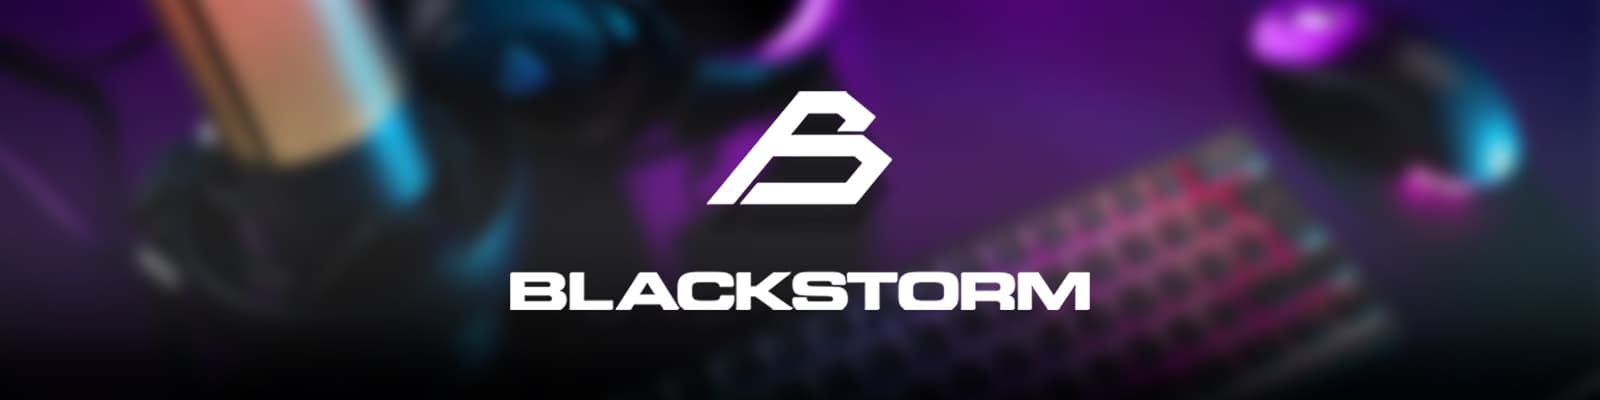 Blackstorm-logo